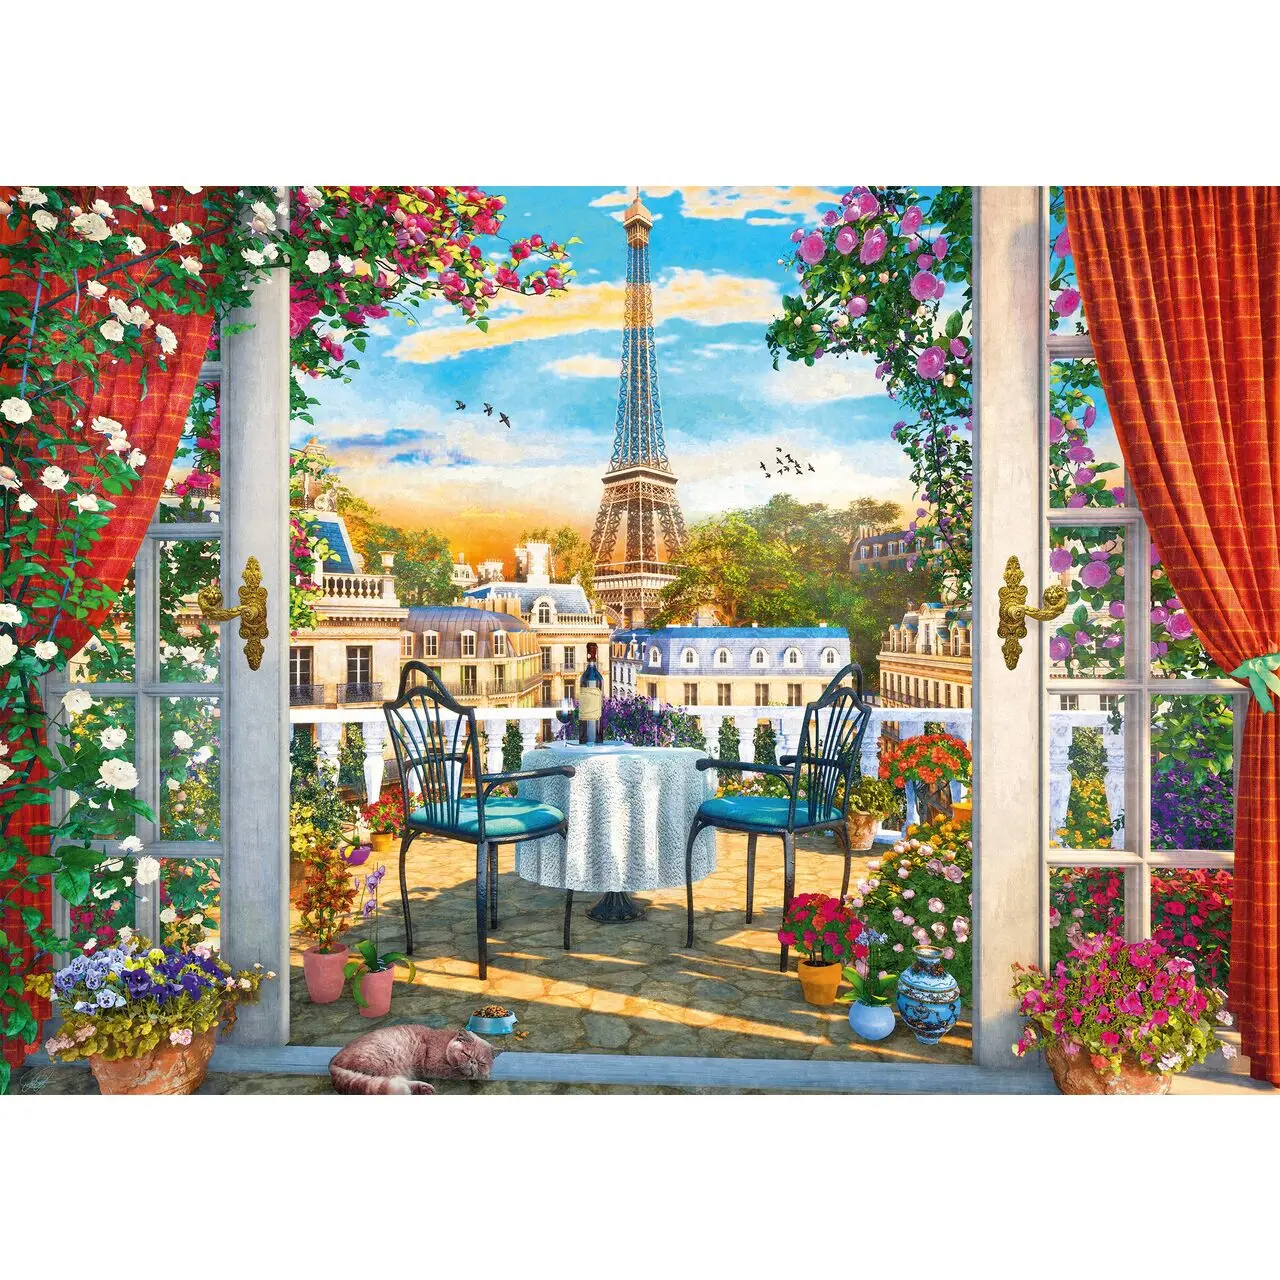 Puzzle Paris in Eine Terrasse